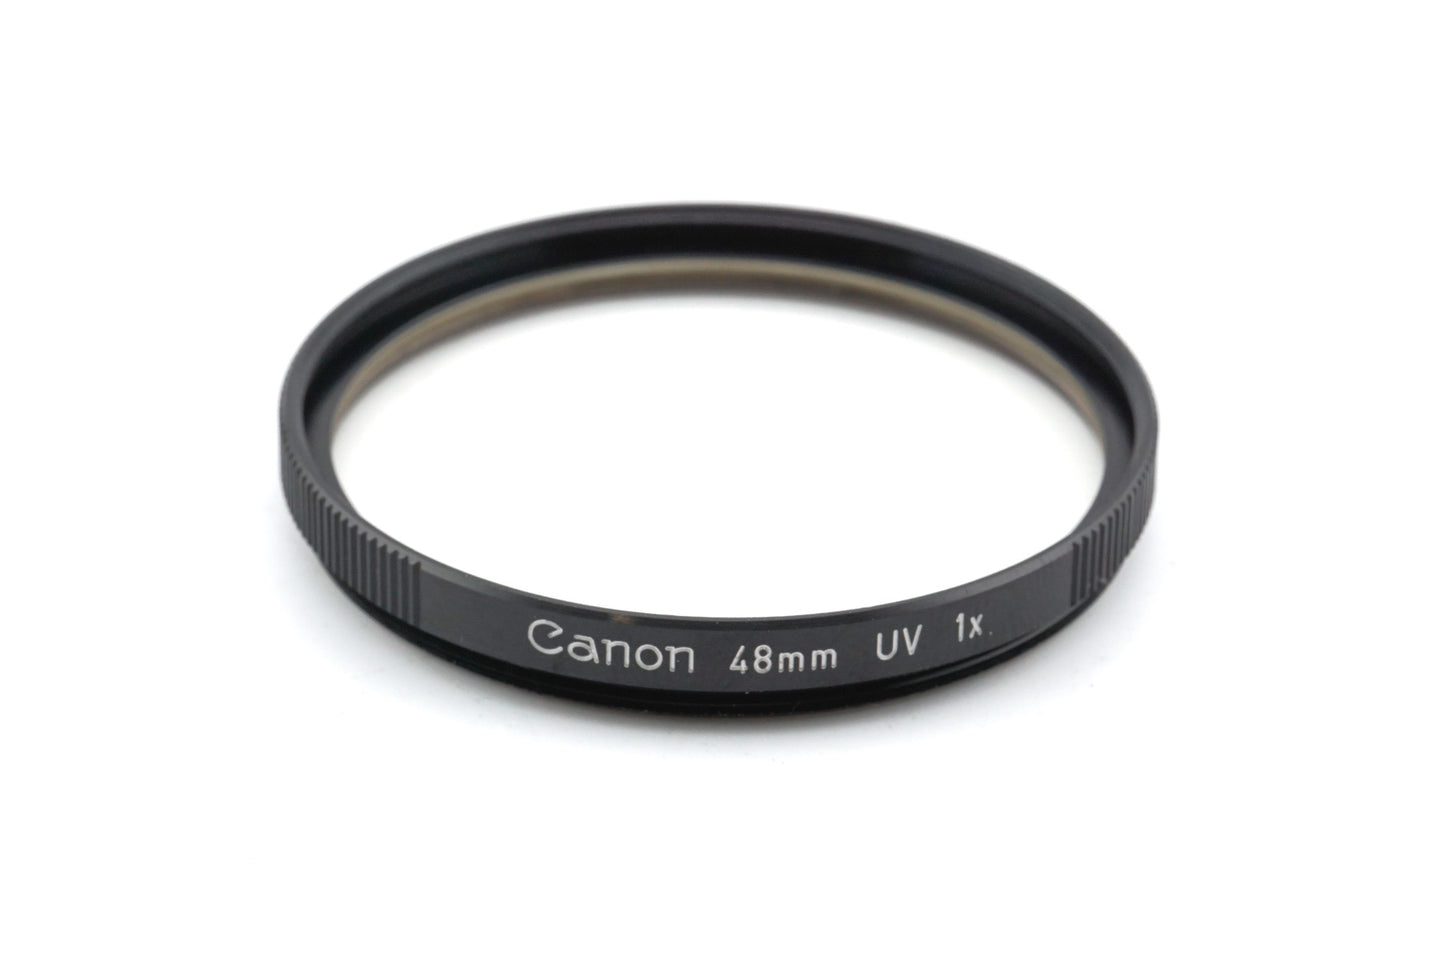 Canon 48mm UV Filter 1x - Accessory